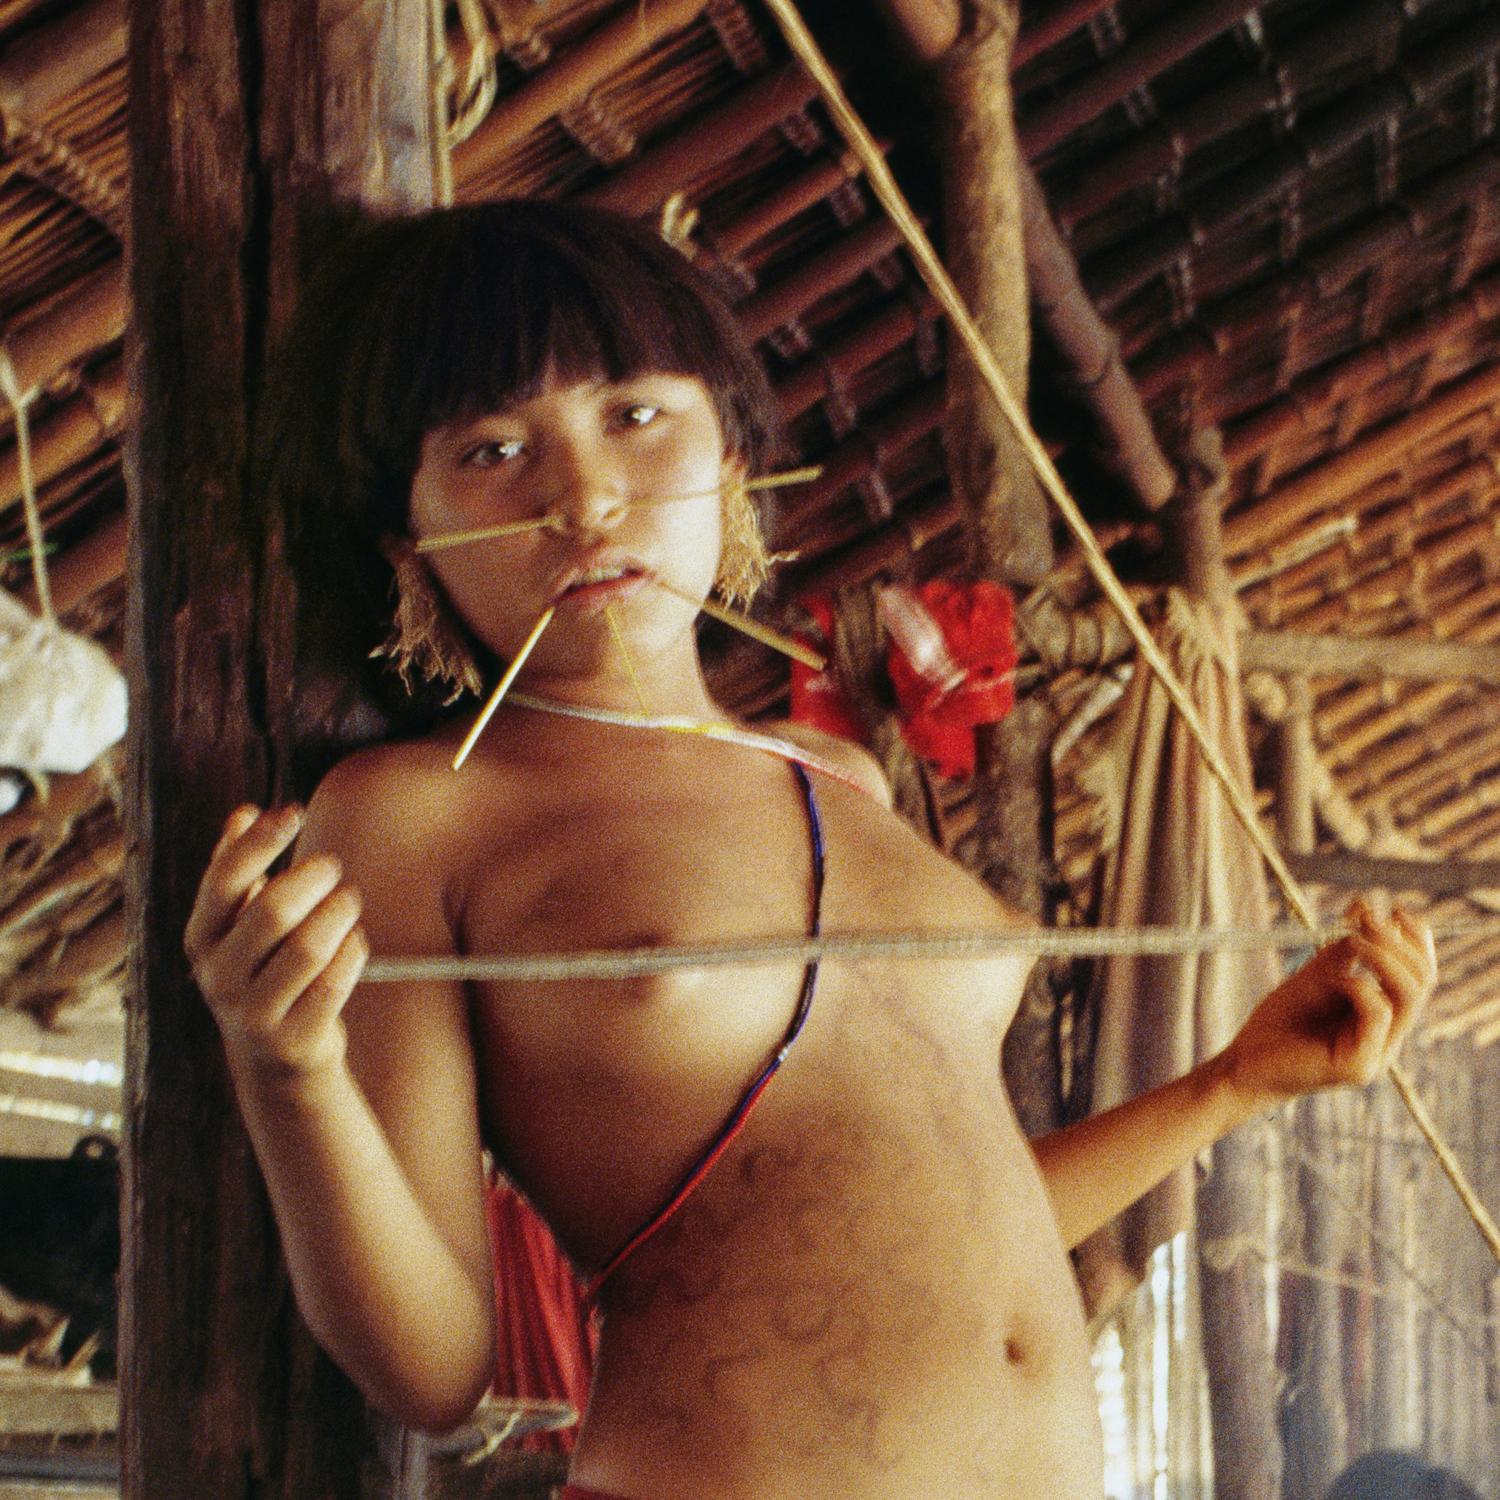 Yanomami, Amazonia, Brazil, January 1995 - Photograph by Jonathan Becker